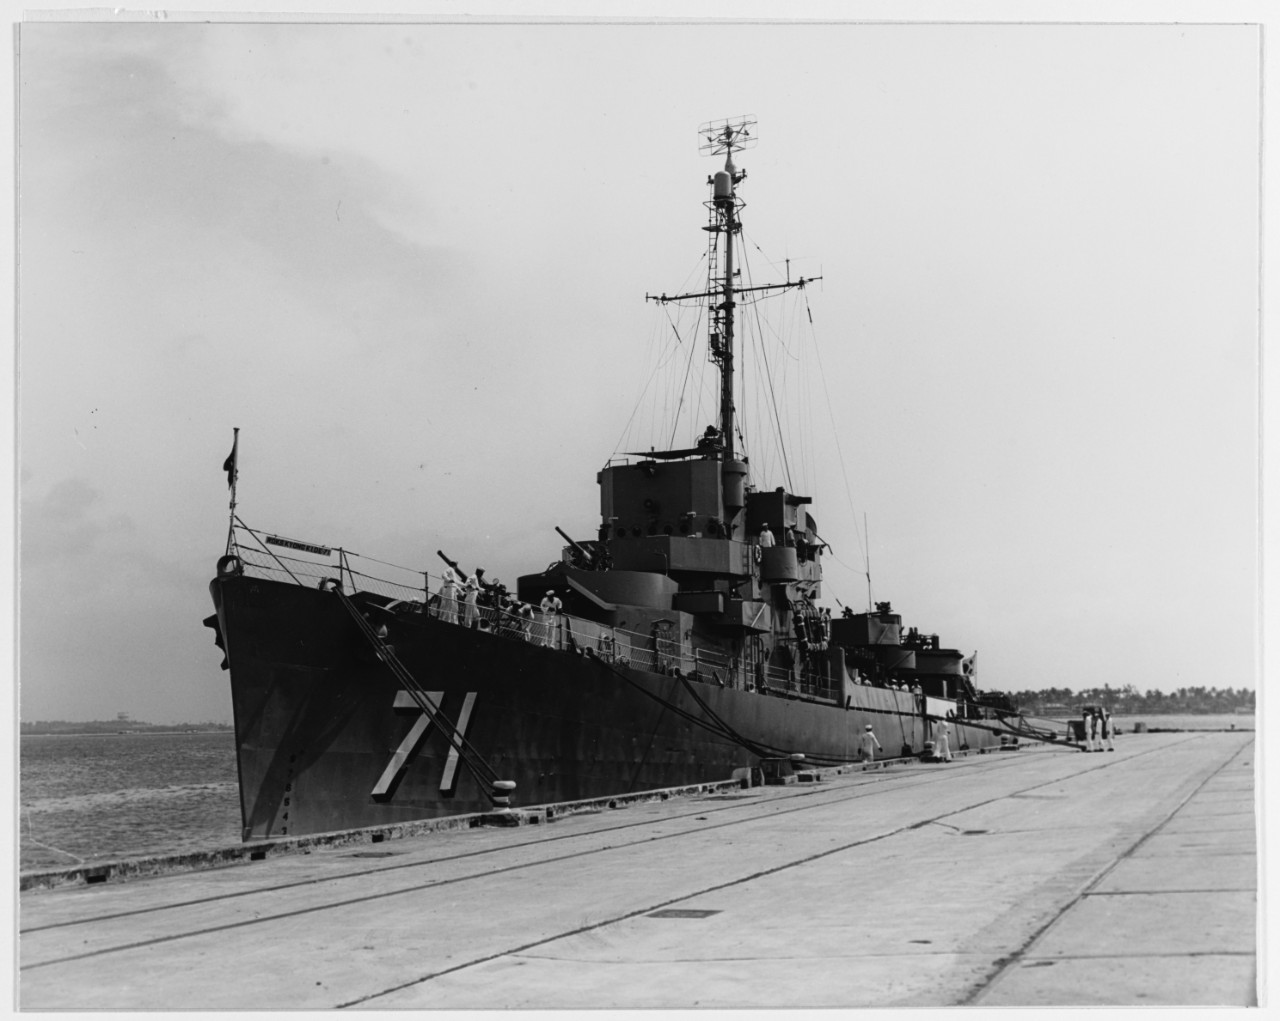 KYONG KI (South Korean, destroyer escort, 1944)